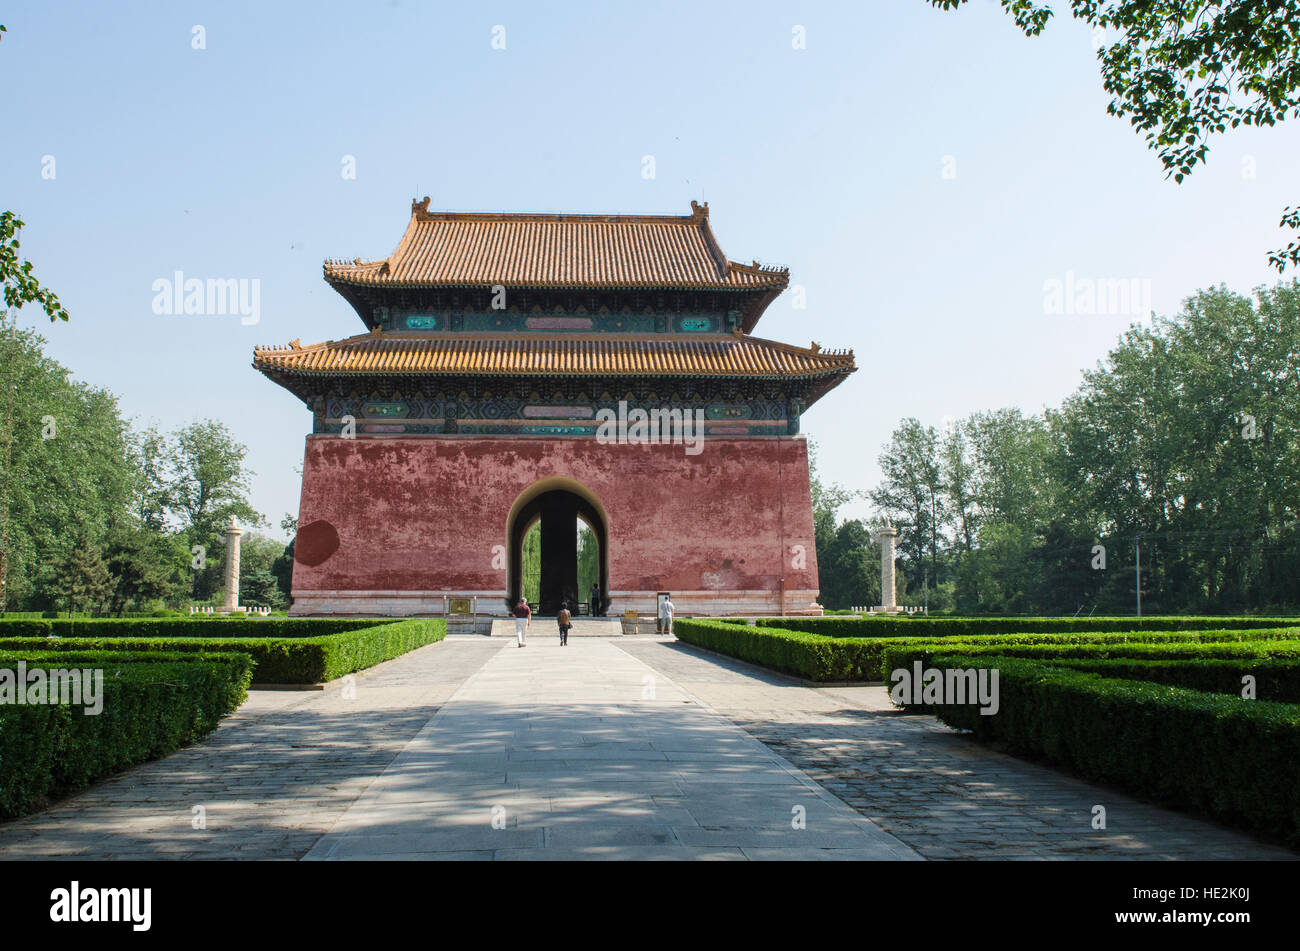 Shen Gong Sheng De Stele Pavilion Sacred Way of Ming Tombs Changping mausoleums, Beijing, China. Stock Photo